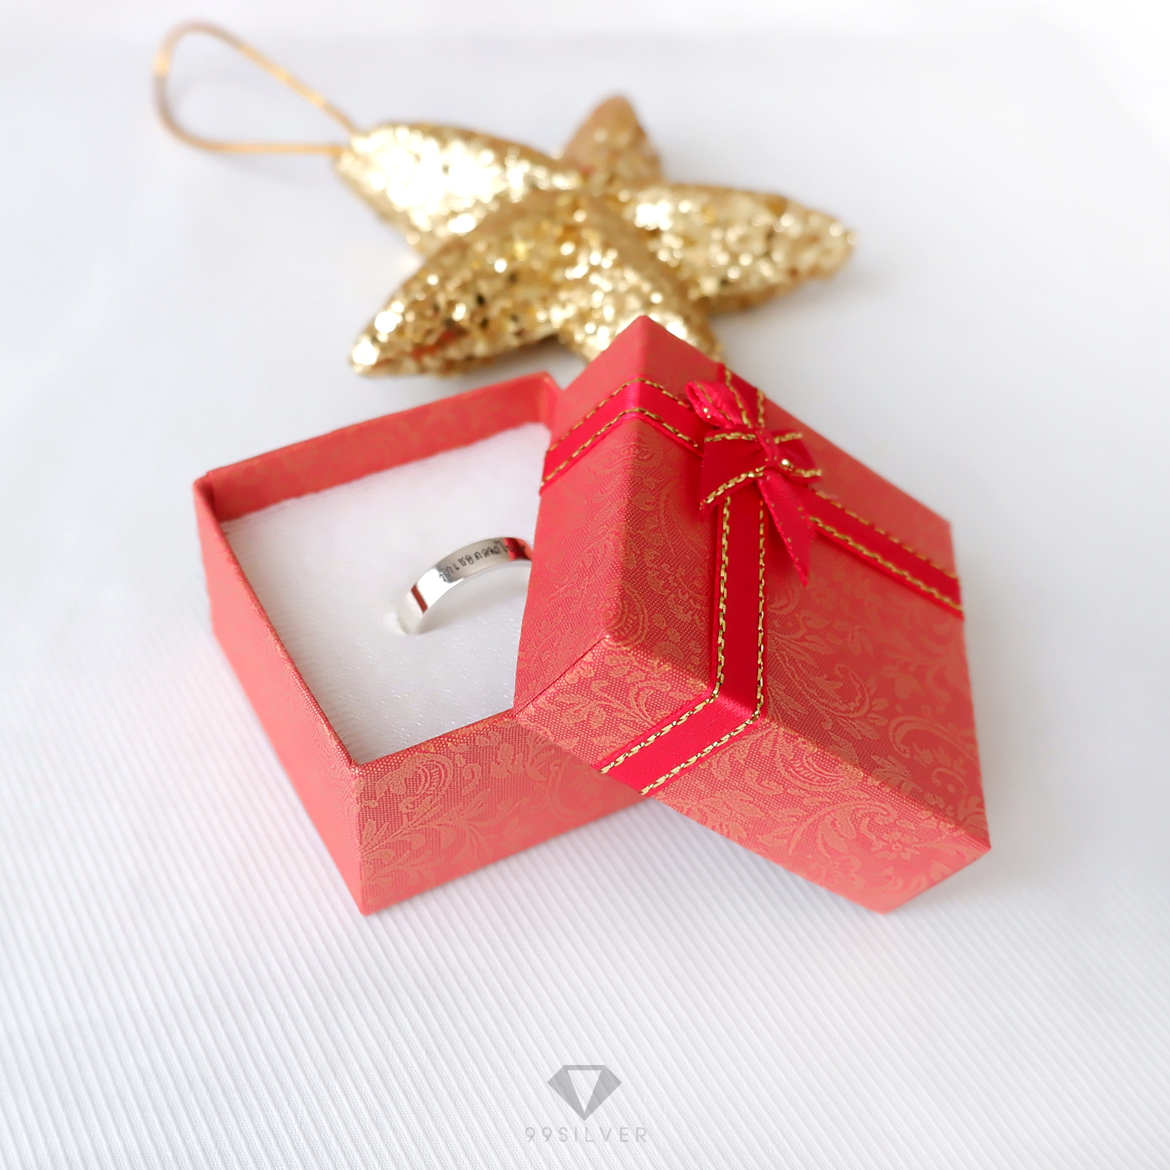 กล่องใส่แหวนสีแดงสี่เหลี่ยม มีโบว์ ข้างในบุด้วยสปั้นช์นิ่มสีขาว